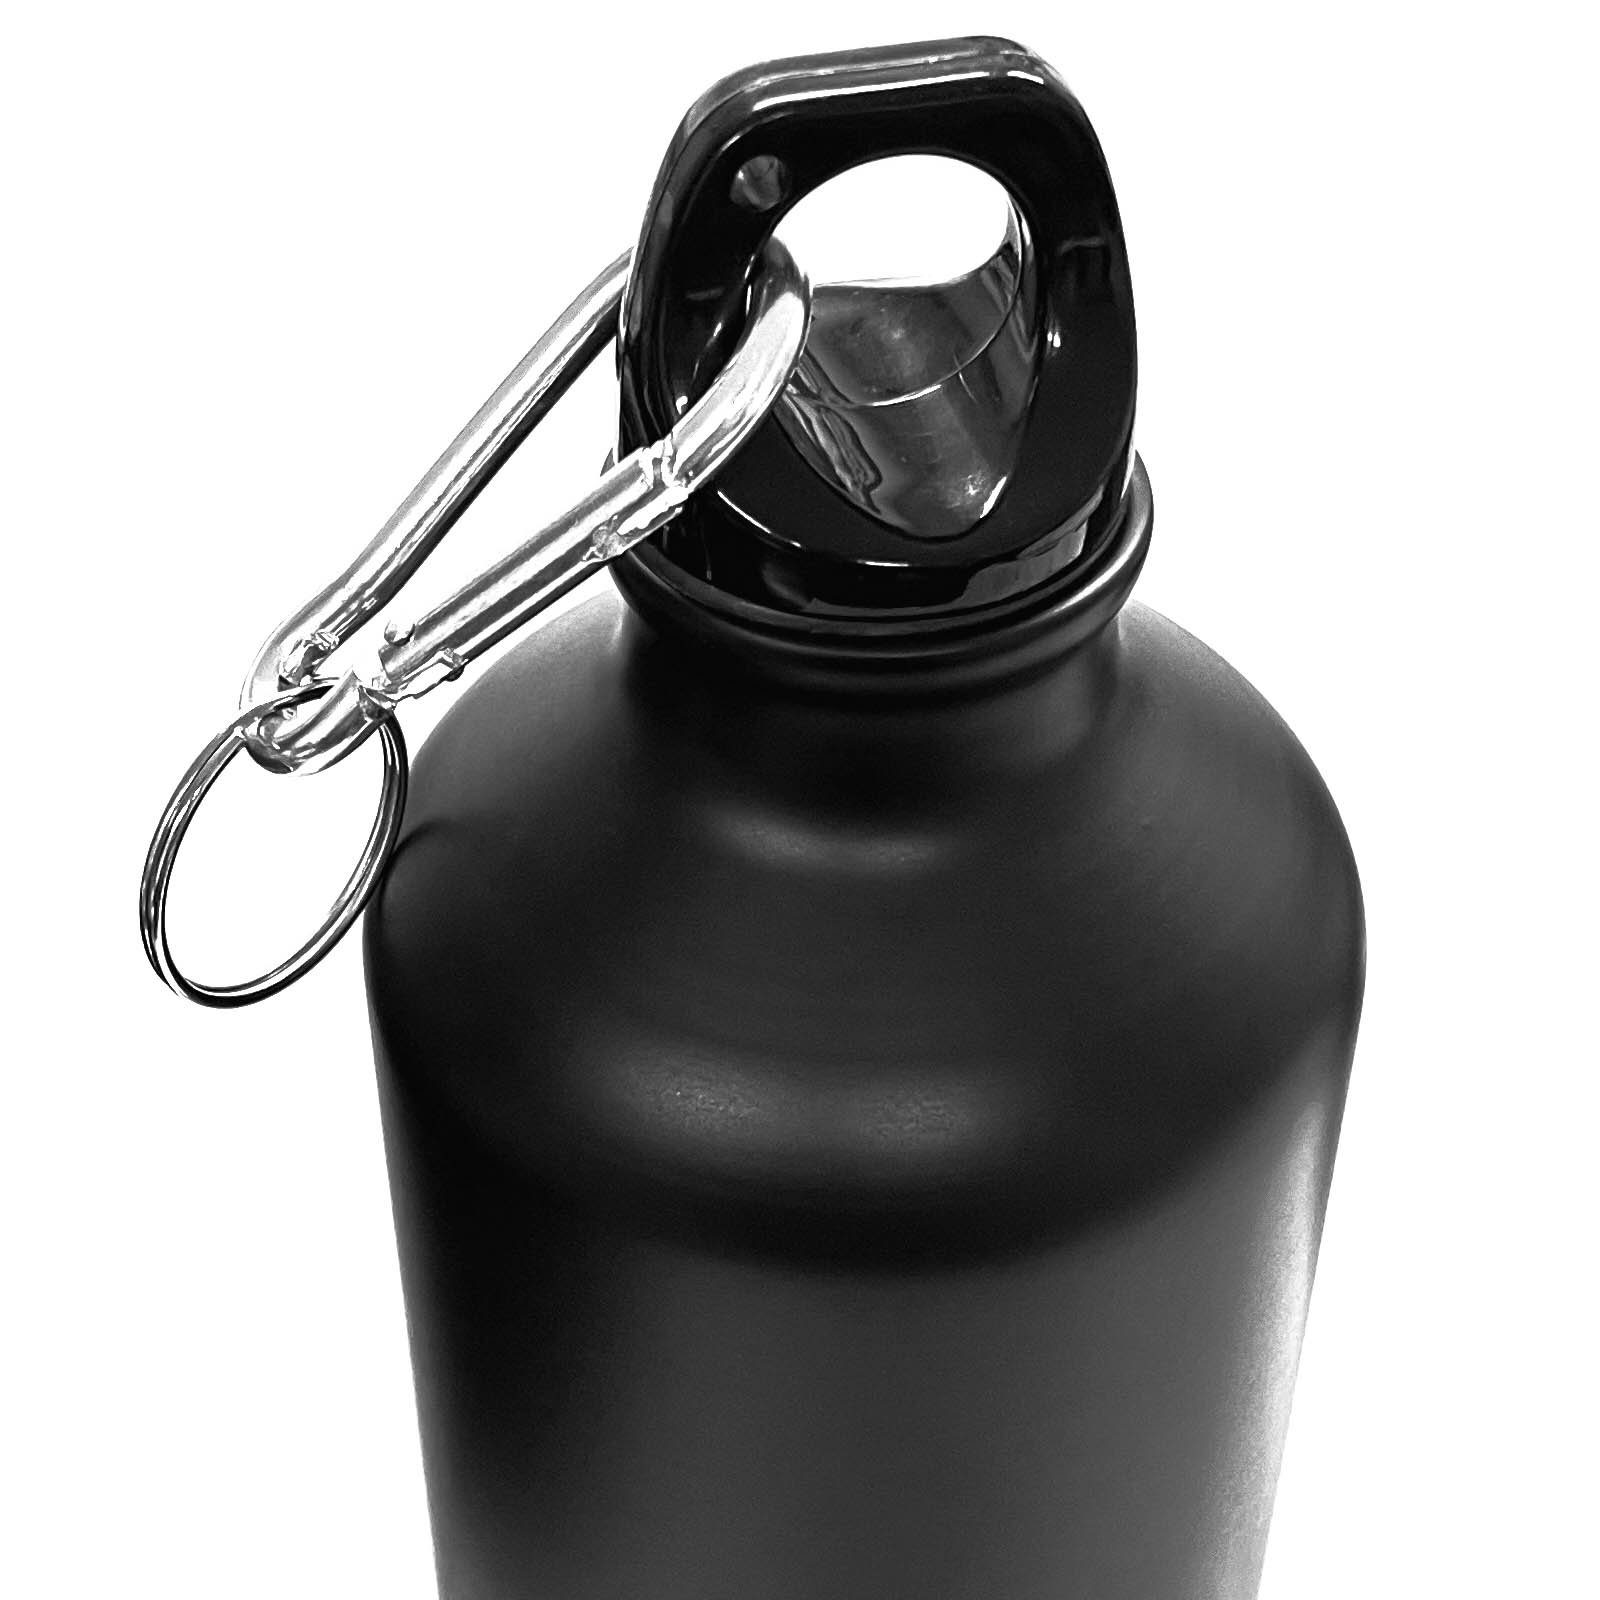 Aluflasche, Alu mit Trinkflasche Wasserflasche HAC24 Aluminium Sportflasche 0,75l, silber Fahrradflasche Karabiner